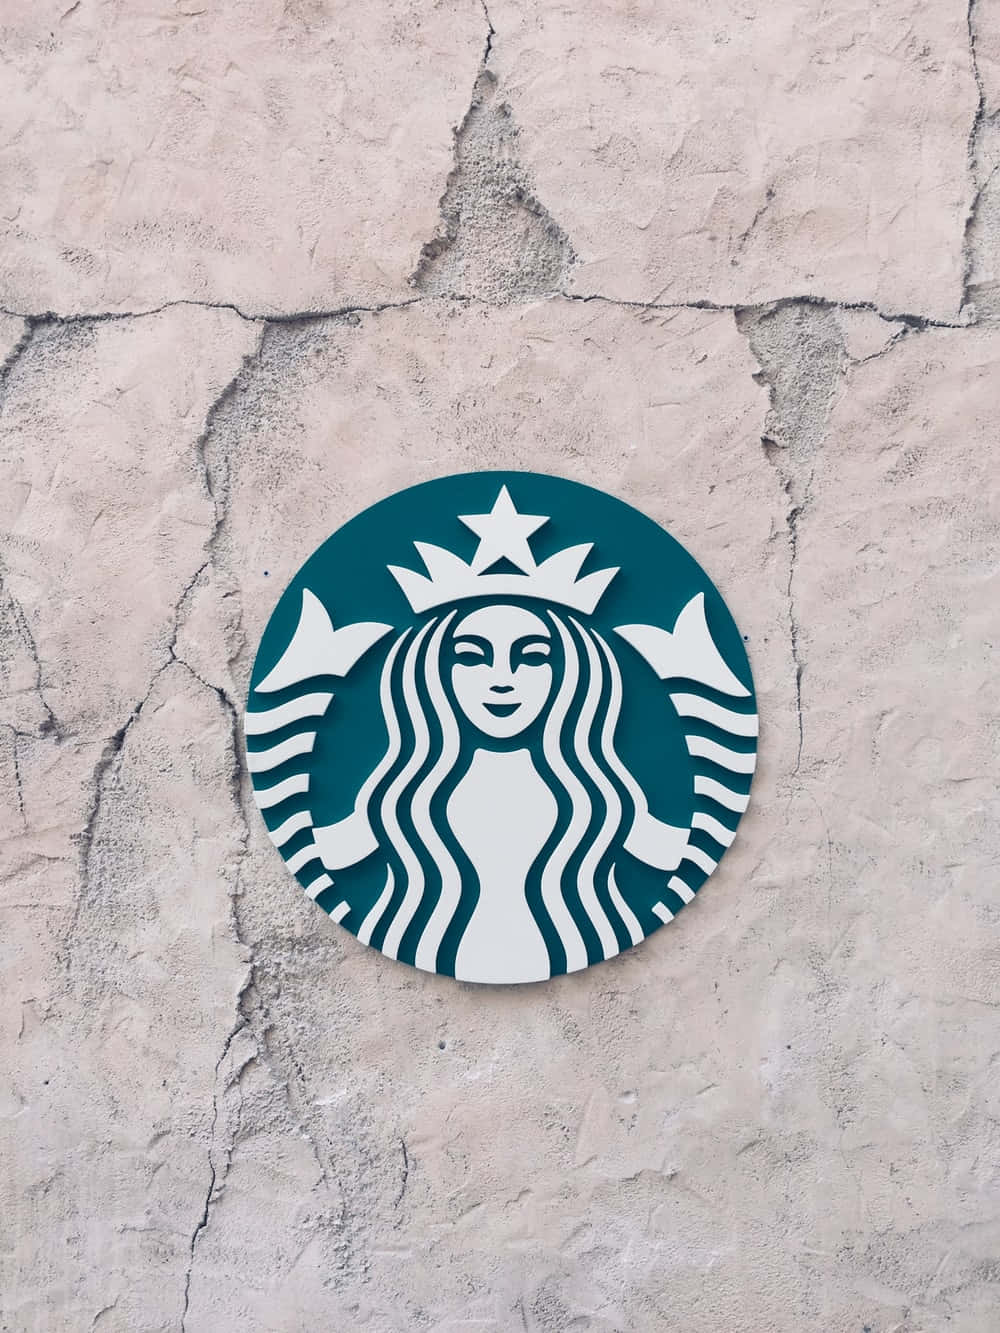 Enjoy the Aesthetic of Starbucks Wallpaper